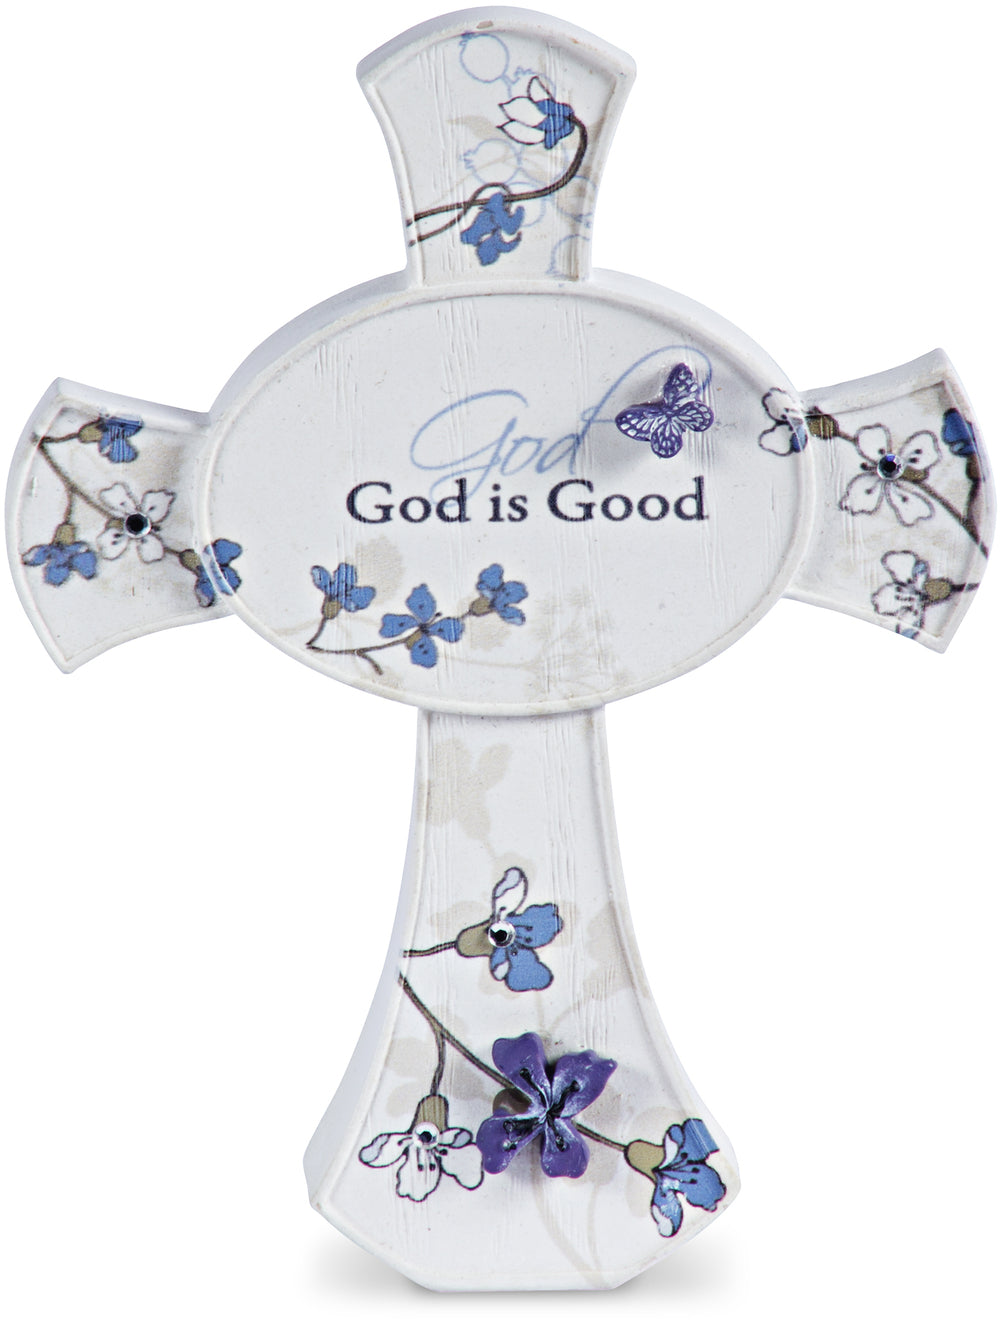 God is Good Self Standing Cross Plaque - Beloved Gift Shop